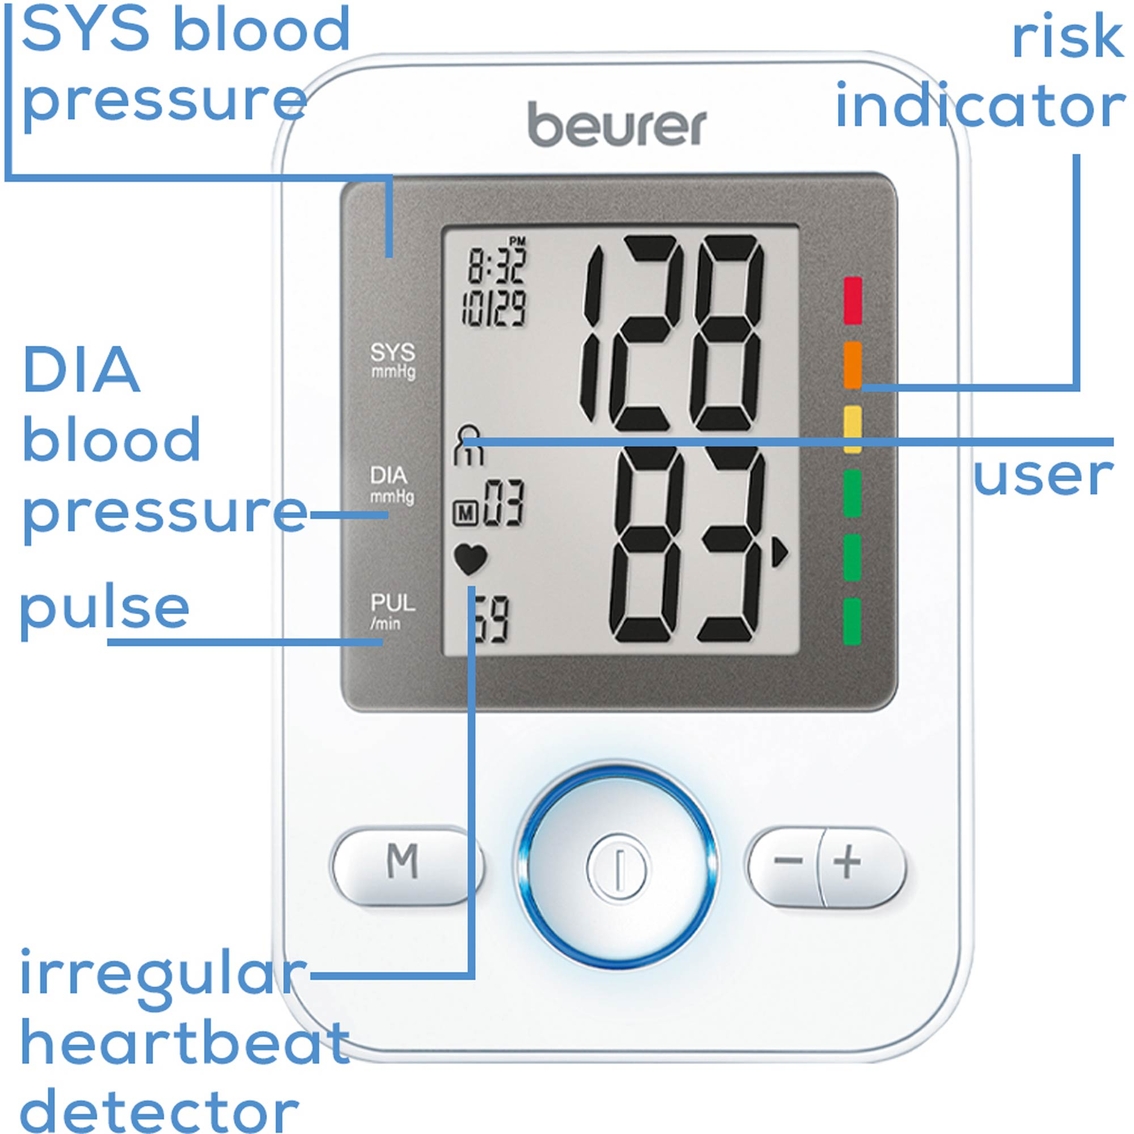 Beurer BM31 Upper Arm Blood Pressure Monitor - Image 3 of 4